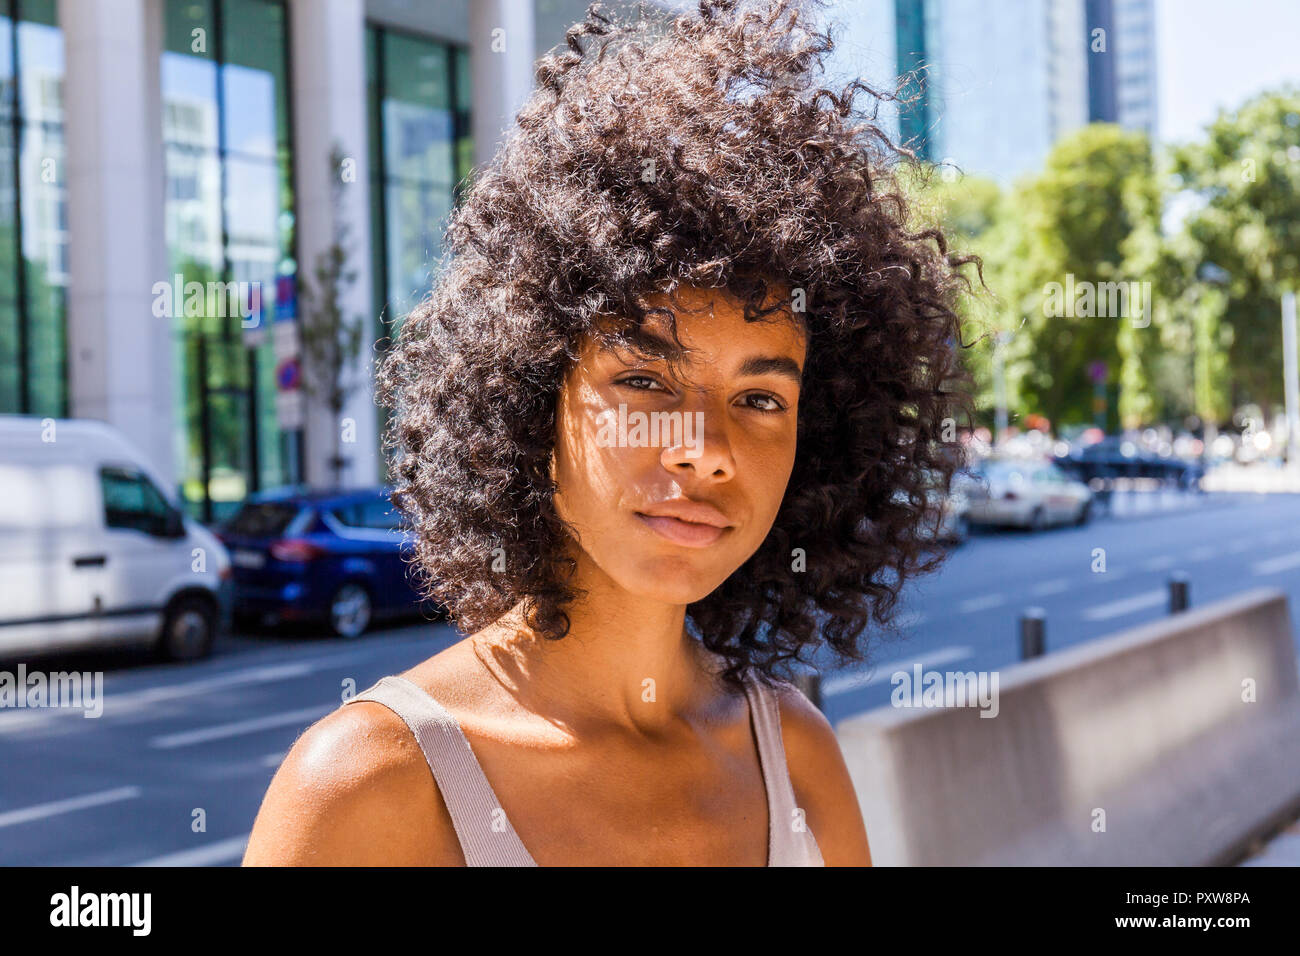 Deutschland, Frankfurt, Porträt der jungen Frau mit dem lockigen Haar Stockfoto